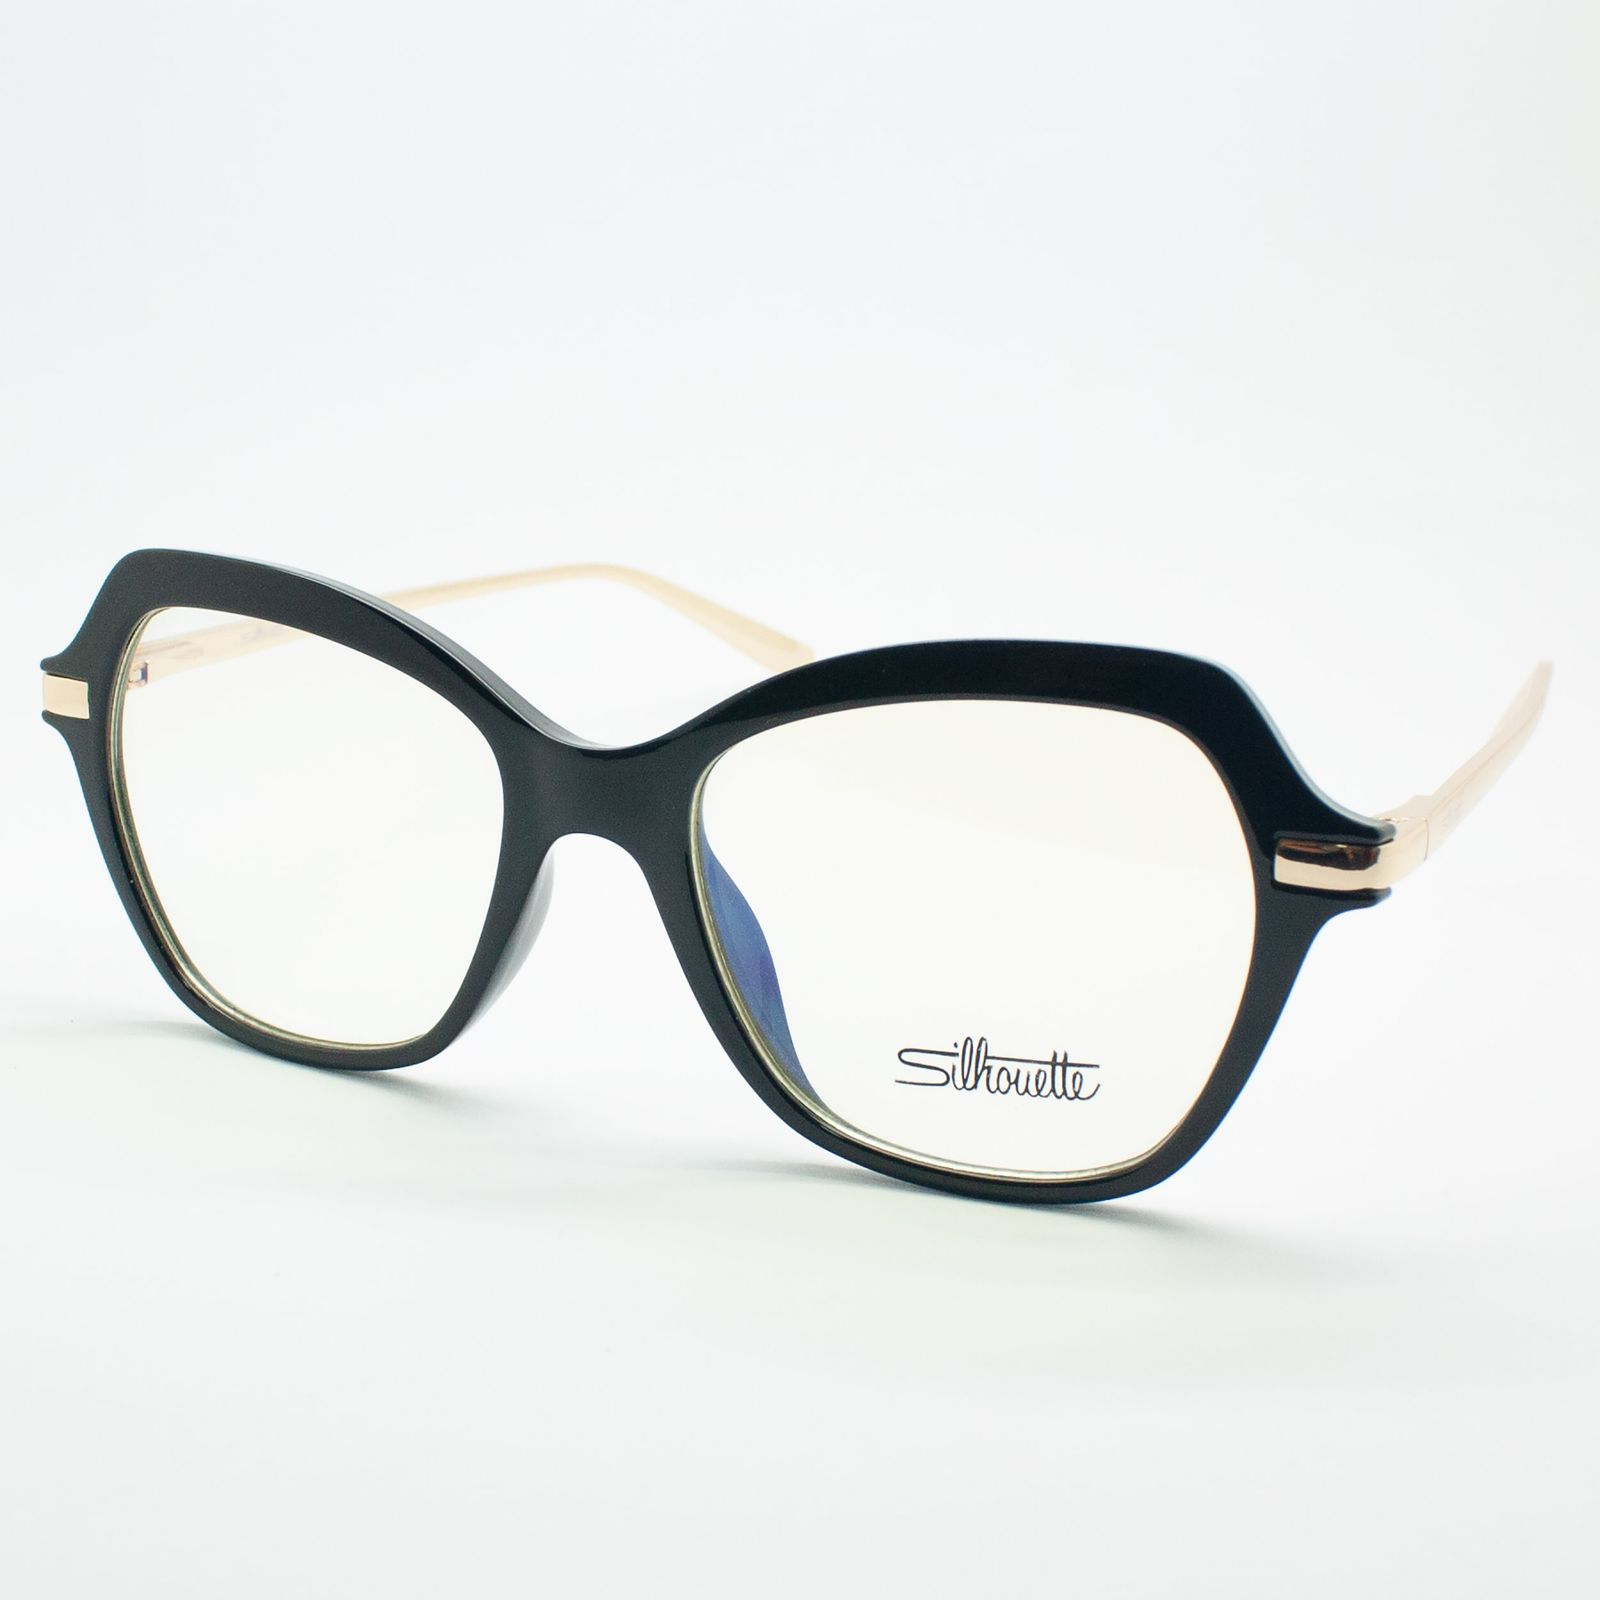 فریم عینک طبی سیلوئت مدل 92328 C1 -  - 3